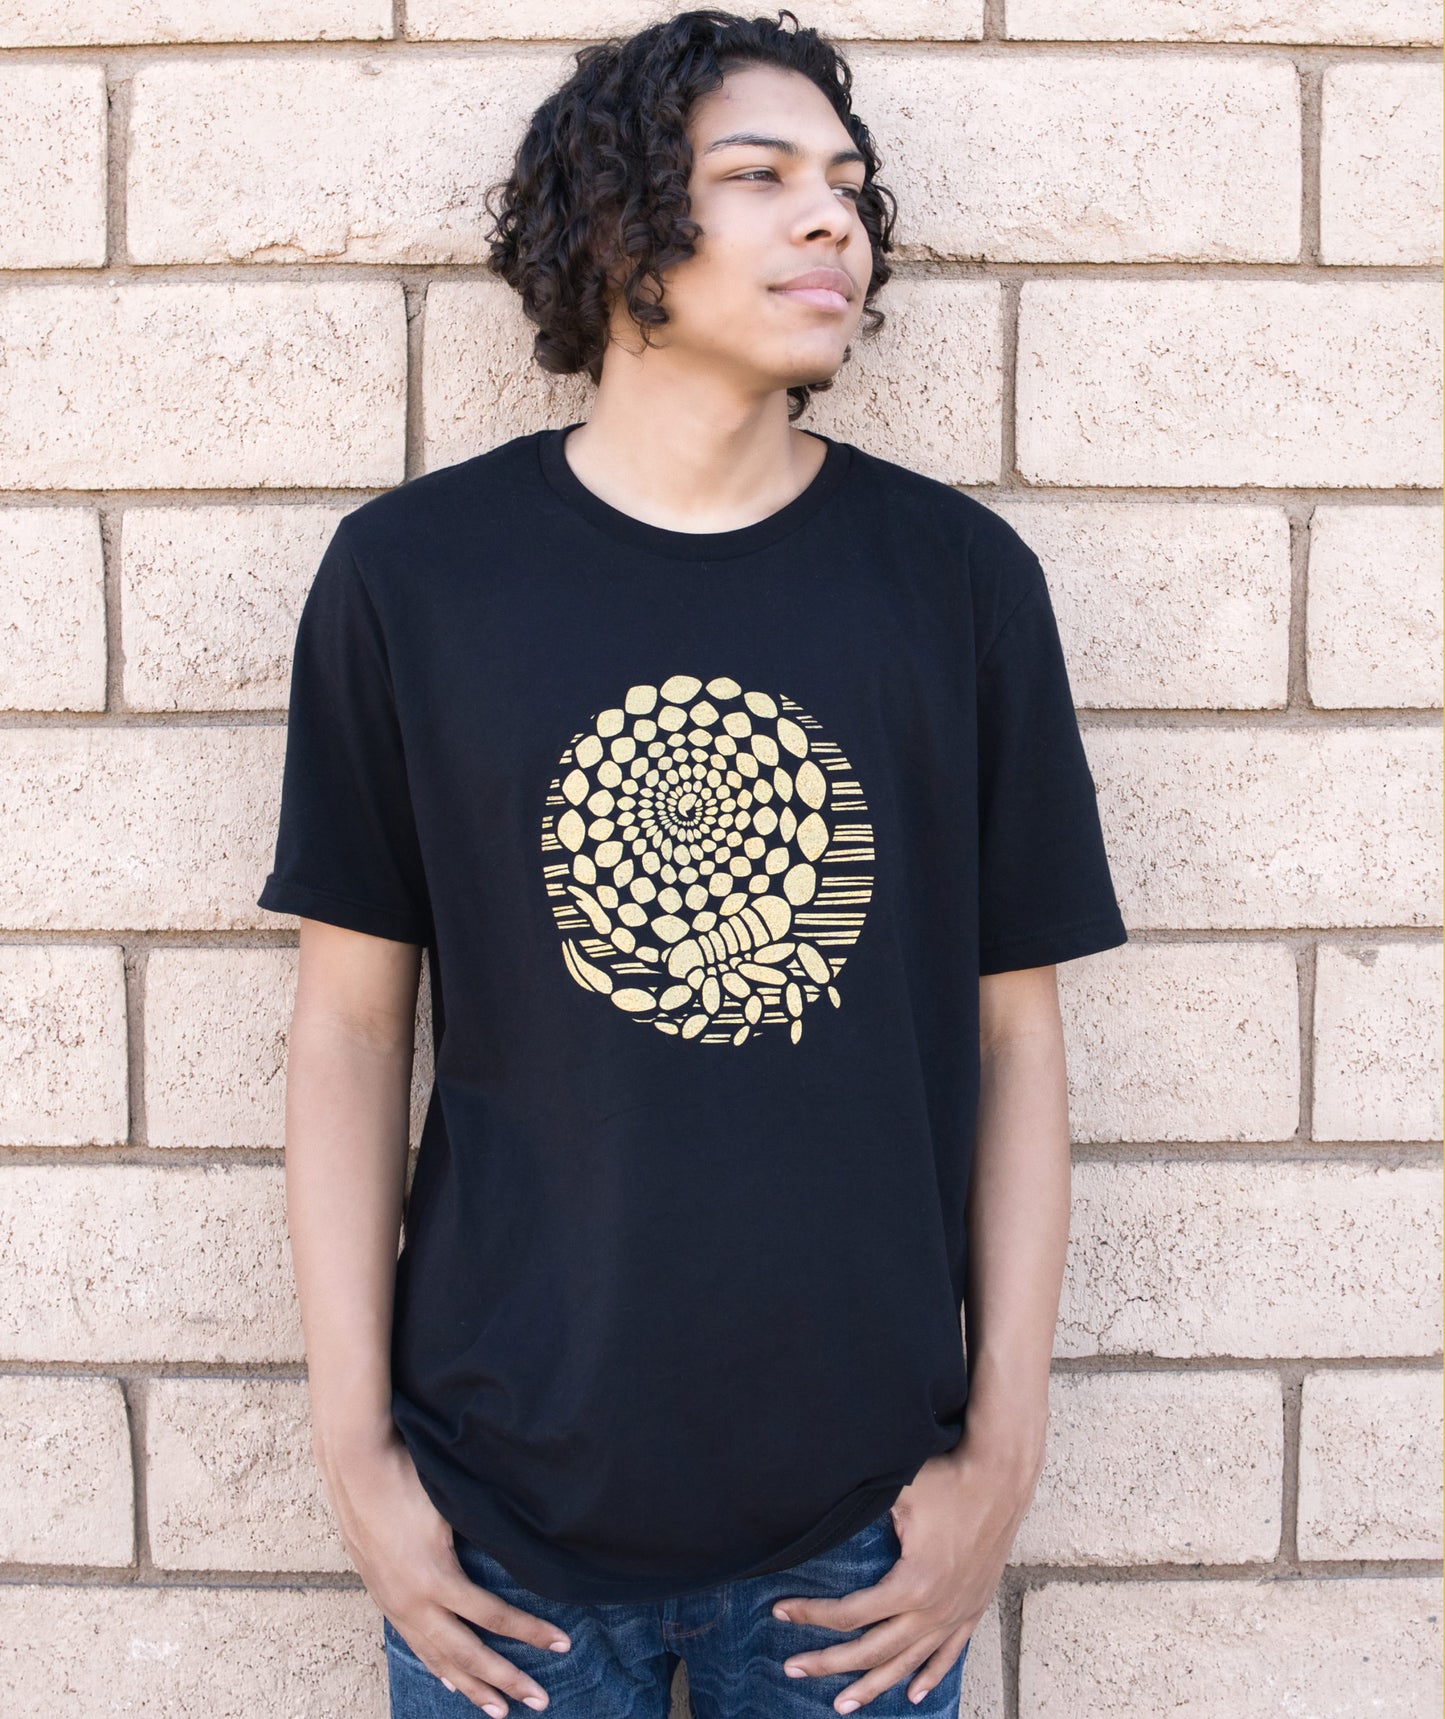 Desert Gold Scorpion T-shirt in Black Modeled by Brenden Greer